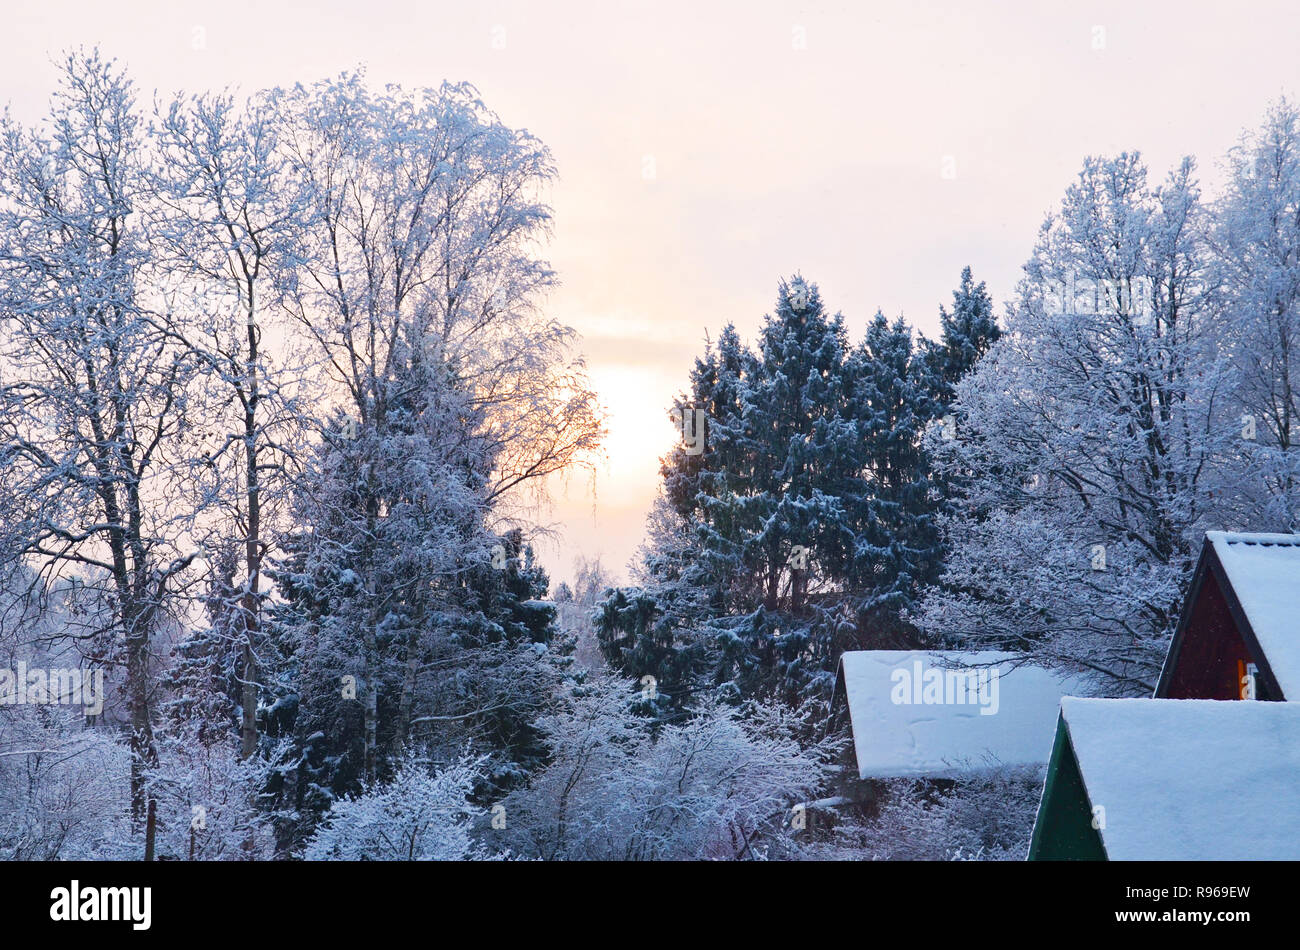 Stock Bild. Winter wald landschaft in der Dämmerung. Zweige von Bäumen, Sträuchern und Dächer der ländlichen Häuser in rime Eis. Stockfoto